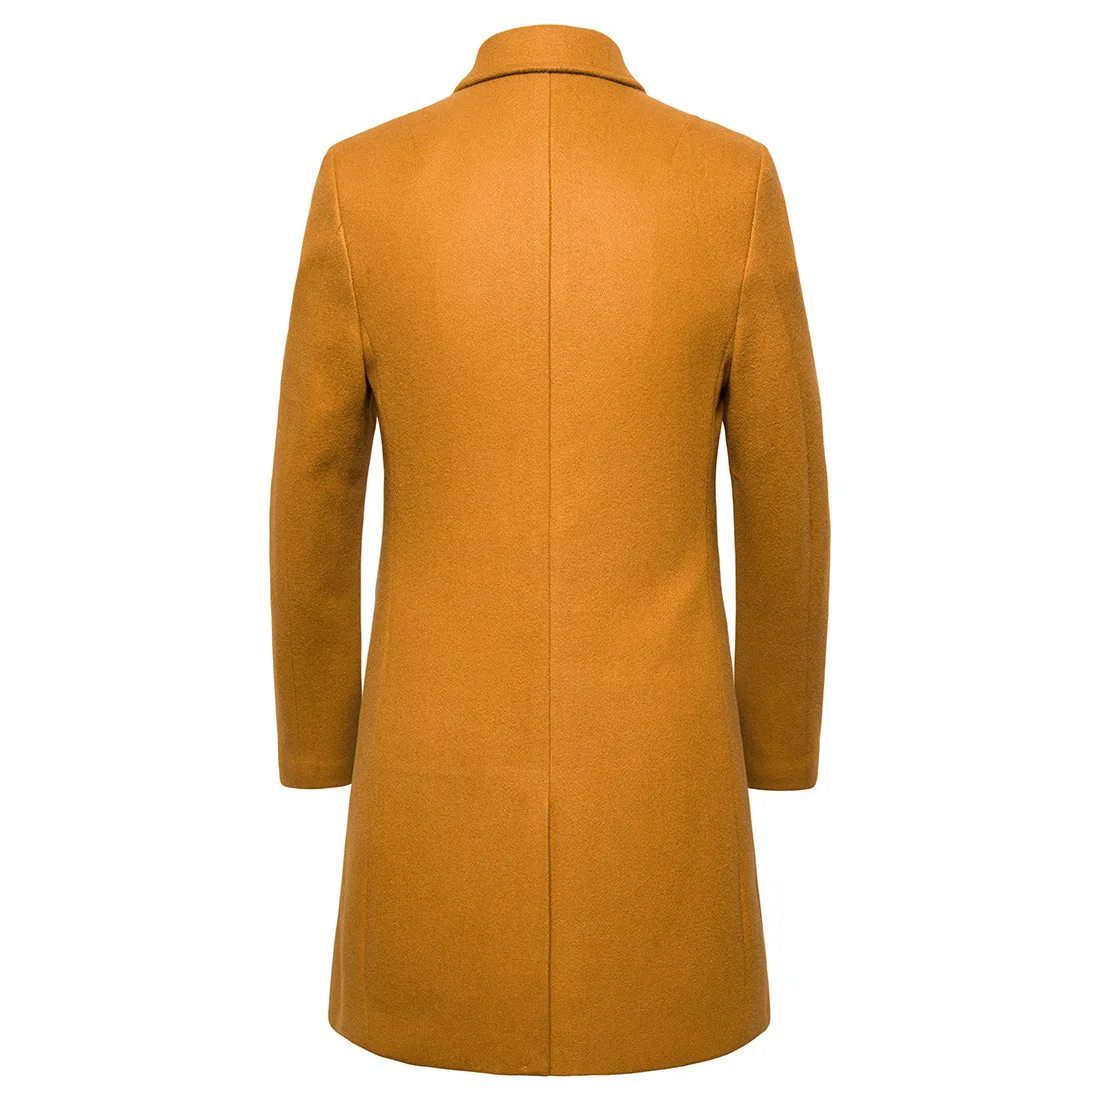 Осень и зима Новое мужское шерстяное пальто в длинном разрезе материала повседневная мужская куртка-ветровка пальто для мужчин